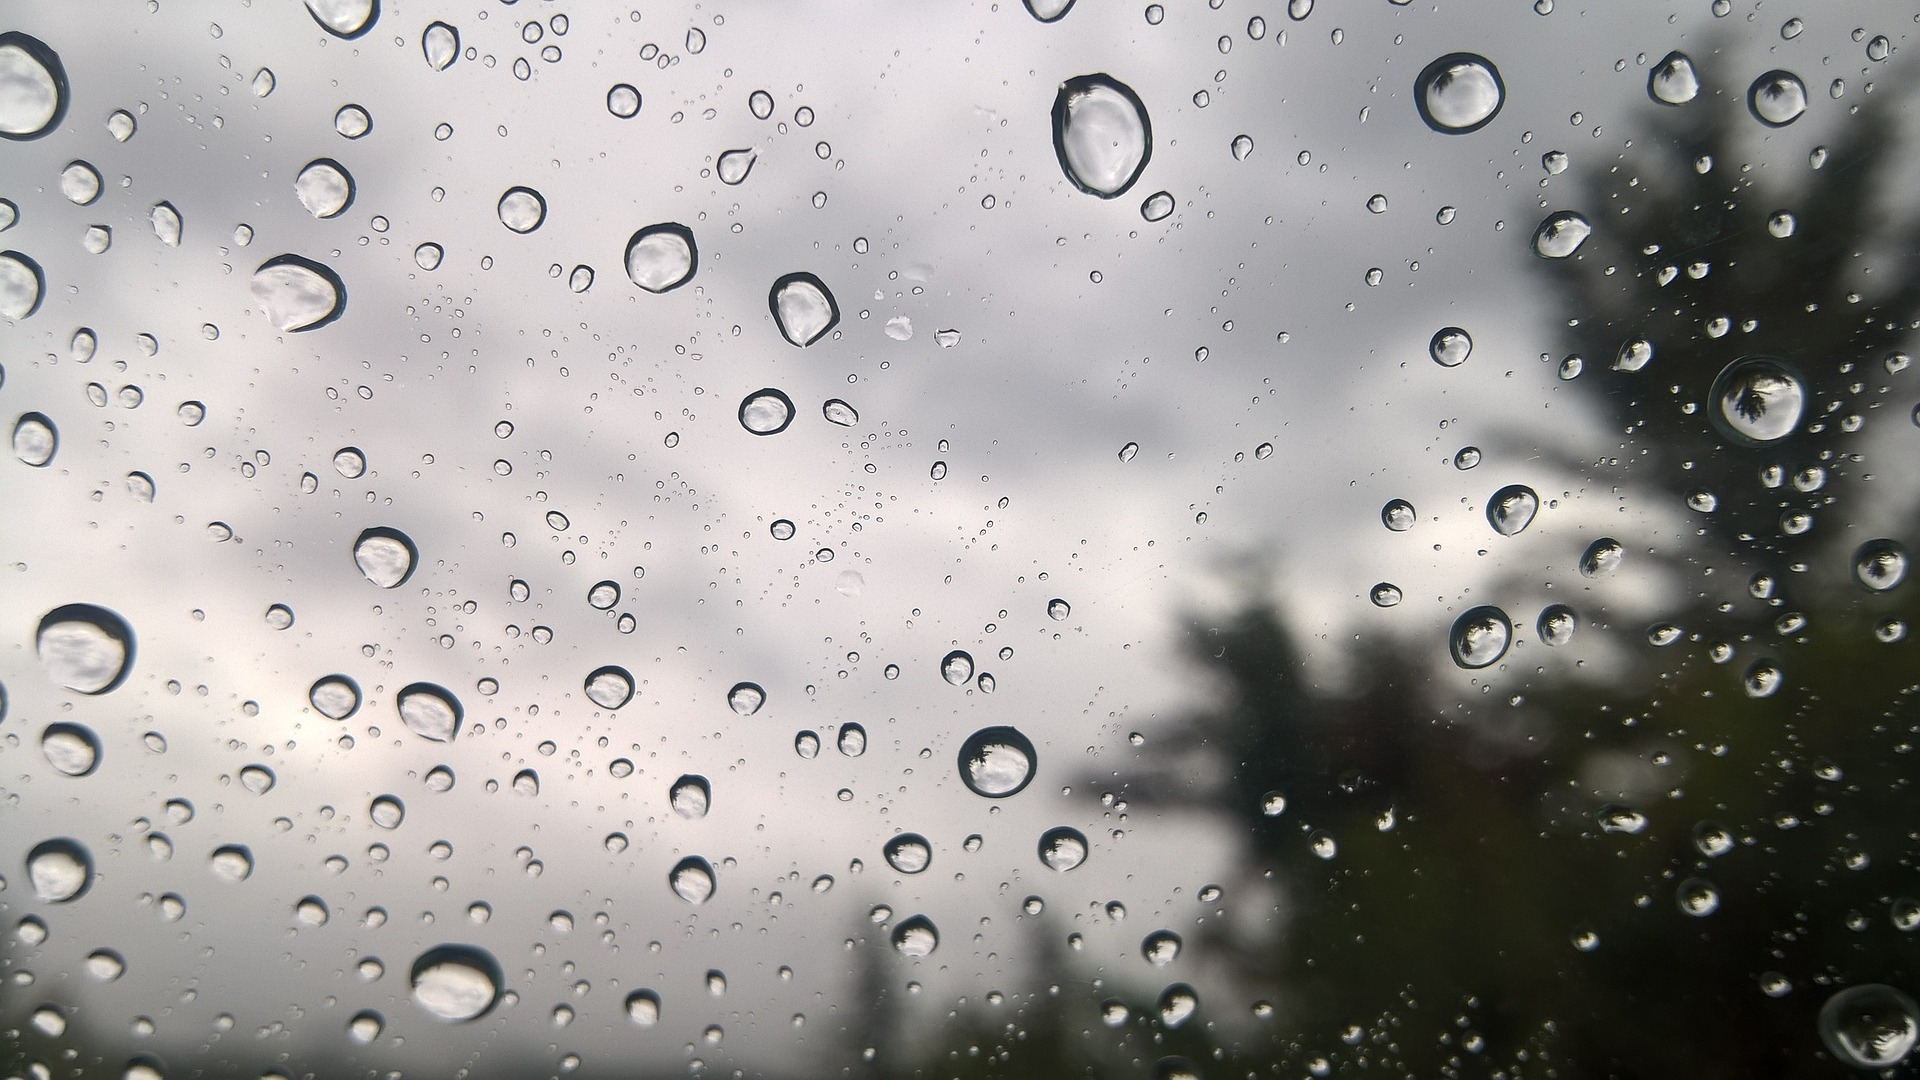 Σάκης Αρναούτογλου: «Ασύλληπτα ύψη βροχής σημειώθηκαν τα τελευταία 24ωρα στην περιοχή του Πηλίου»